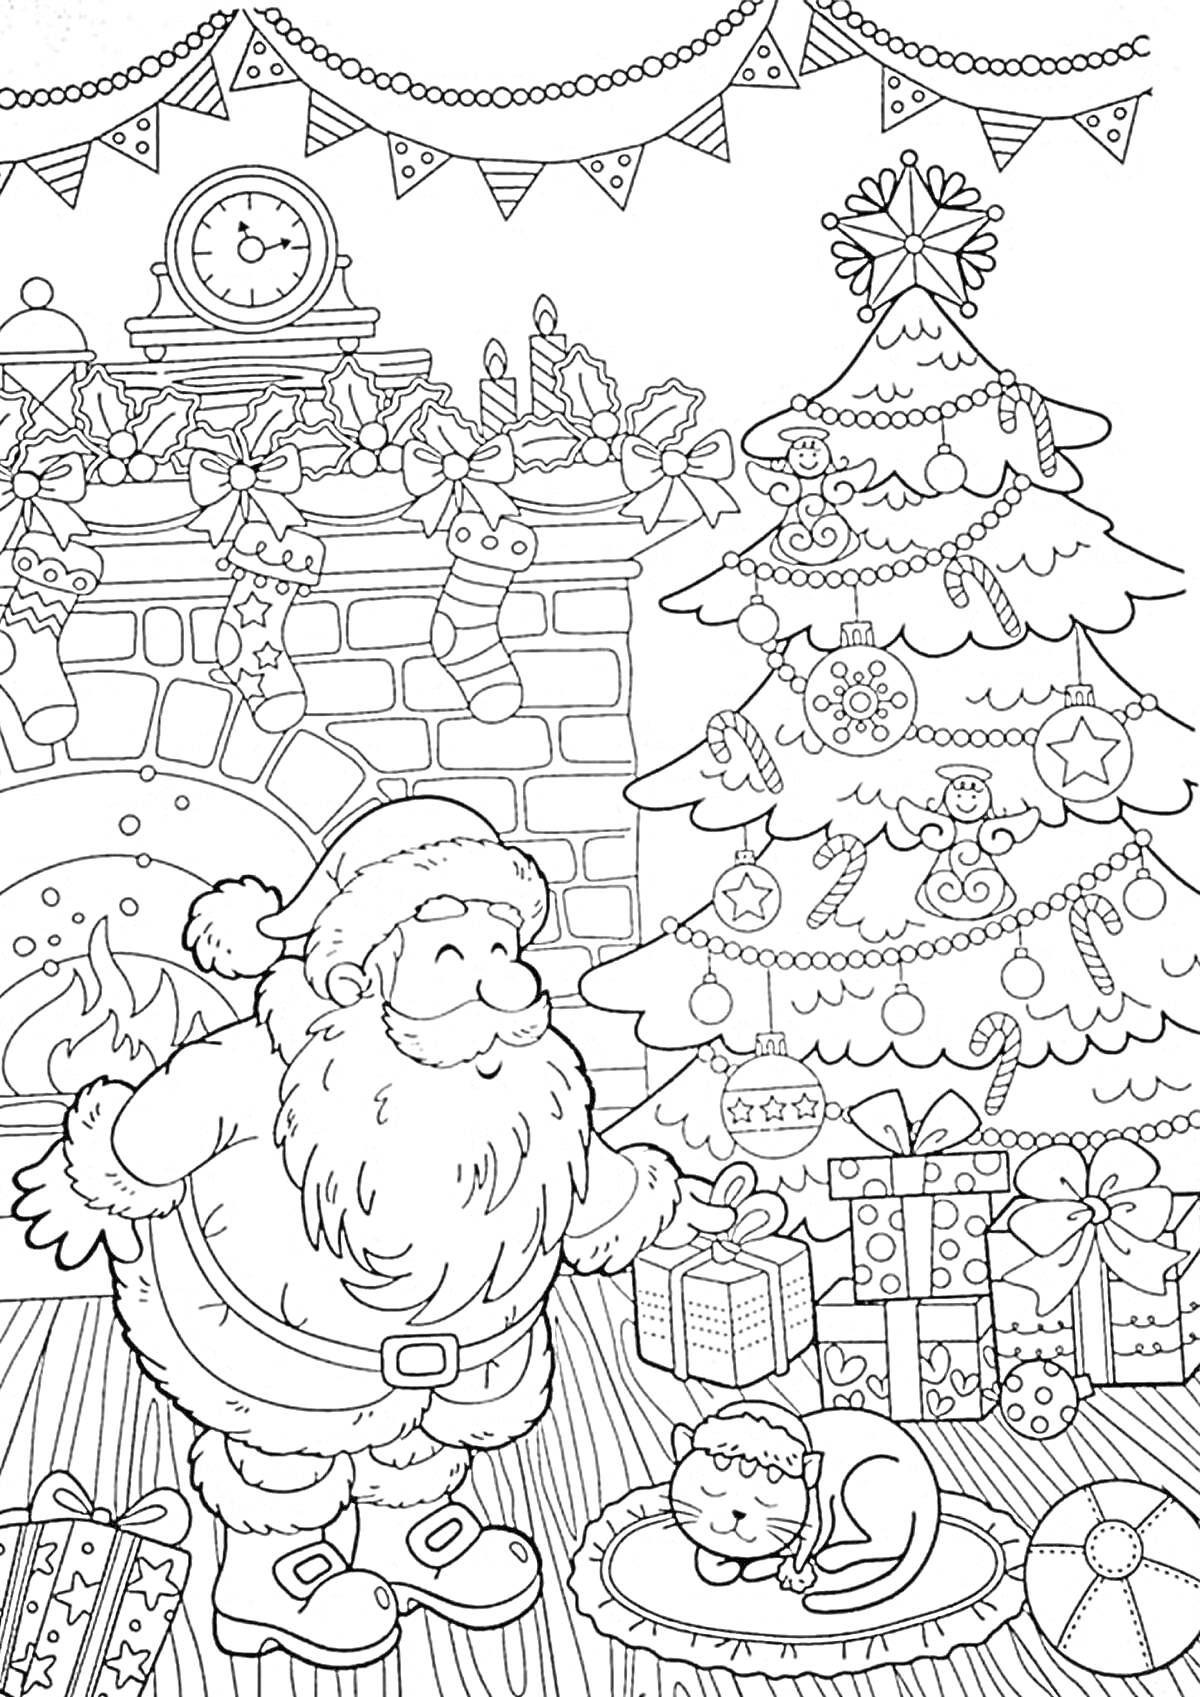 Раскраска Санта-Клаус с подарками, спящий котенок на коврике, украшенная елка, подарки, камин с новогодними носками, гирлянды и часы